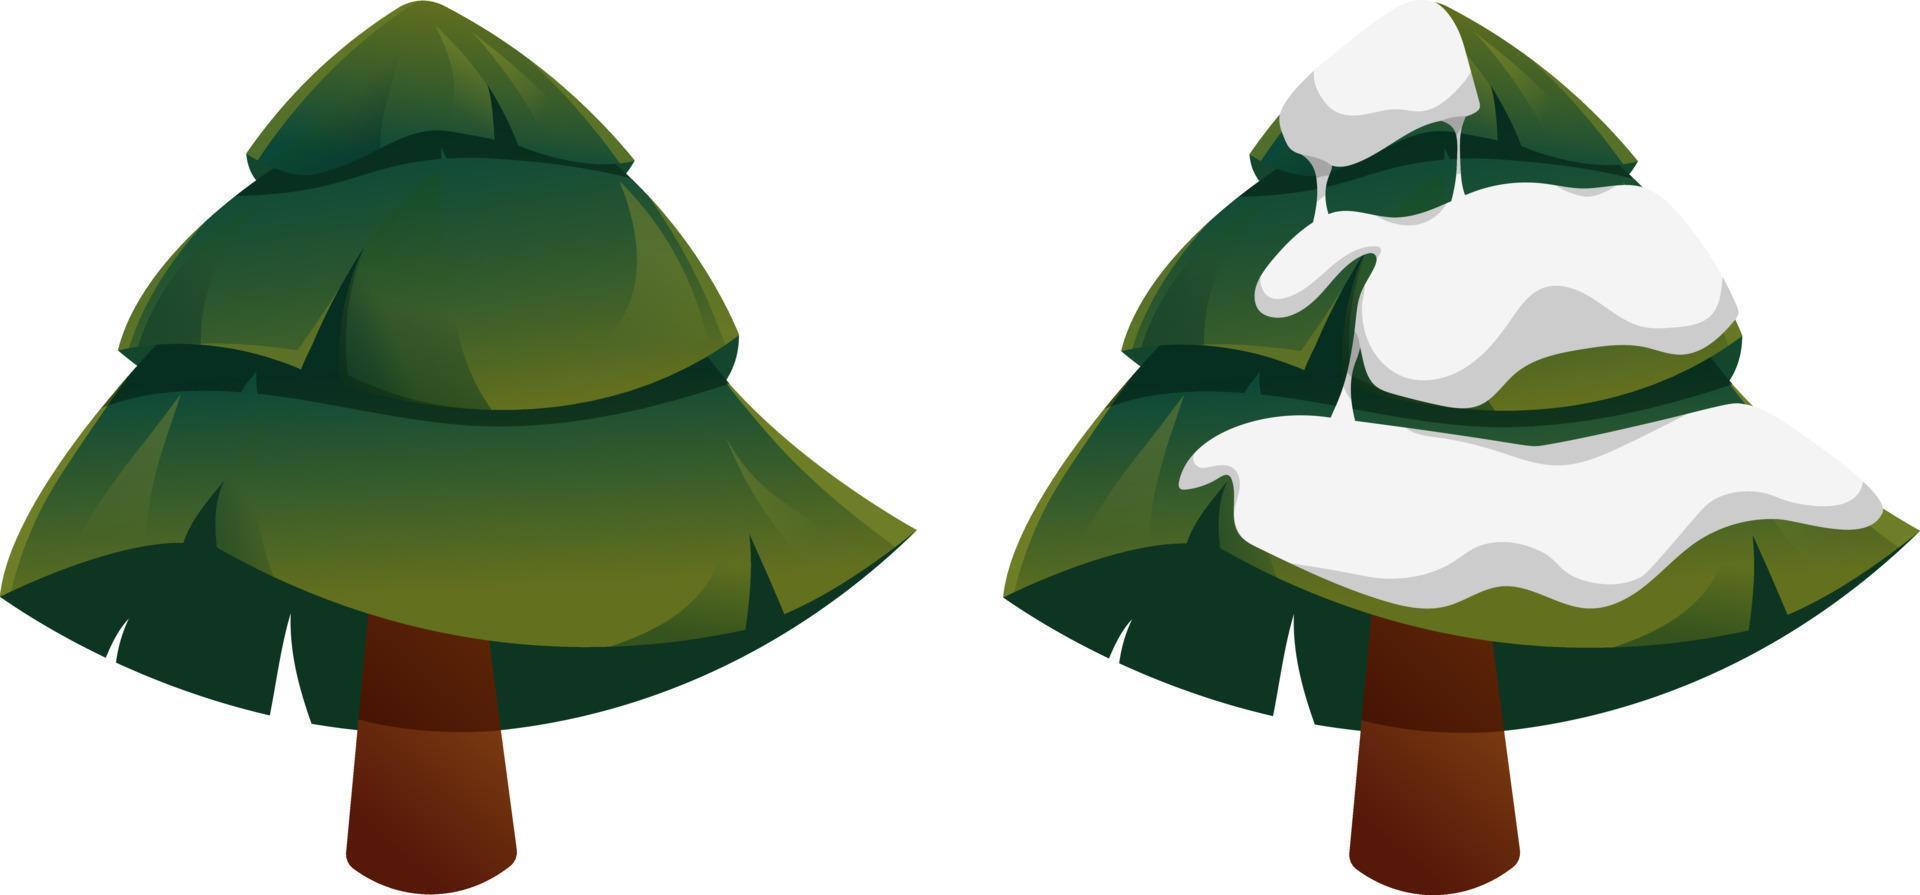 gran árbol de navidad en estilo de dibujos animados con y sin nieve aislado vector